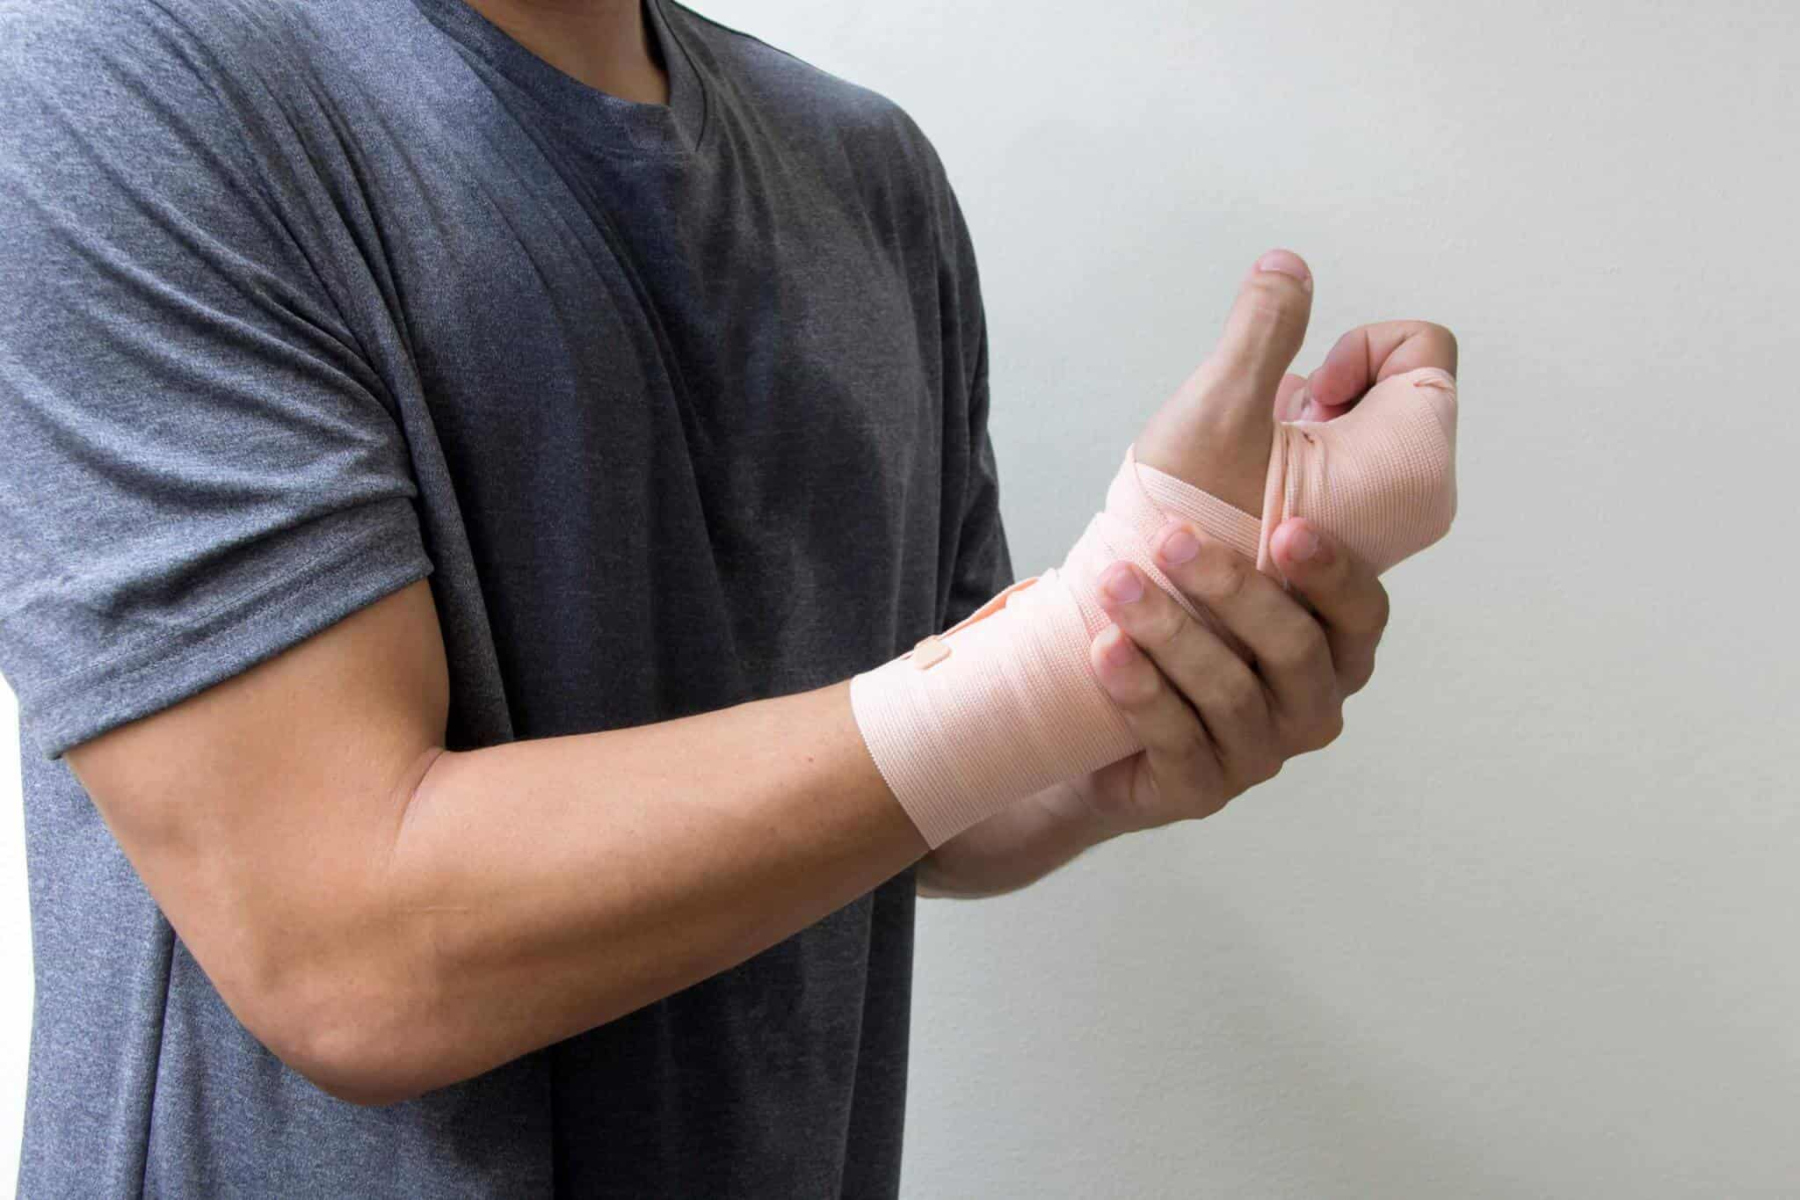 Σπασμένο χέρι: Φροντίστε τον εαυτό σας ακόμα και με σπασμένο χέρι